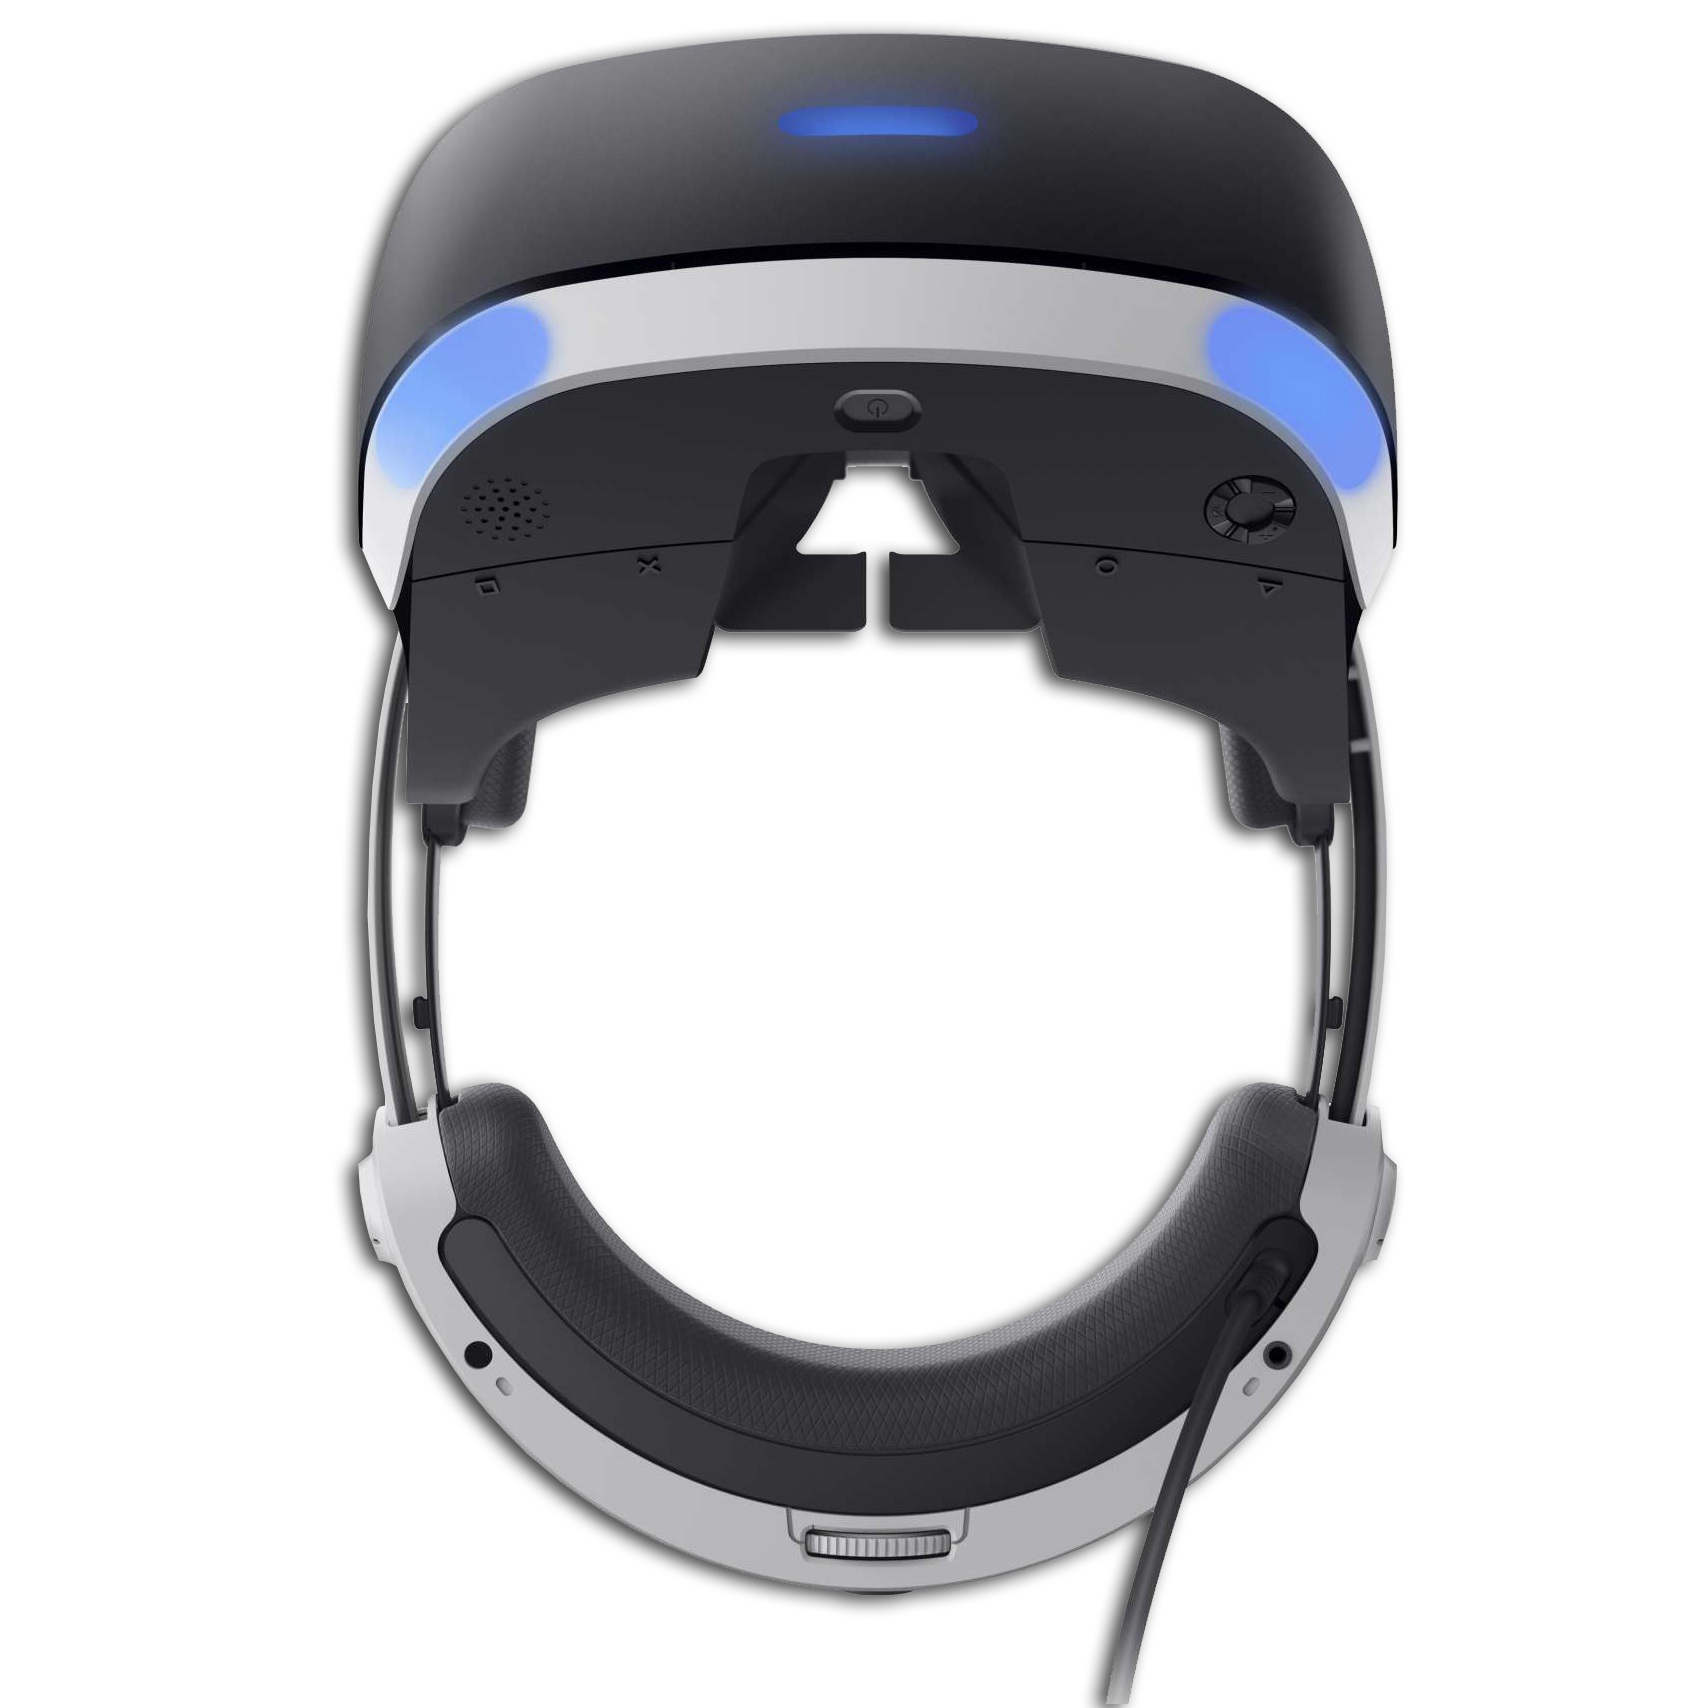 Очки пс вр. Шлем виртуальной реальности Sony PLAYSTATION VR. Sony ps4 VR. Sony VR шлем. Шлем PLAYSTATION VR CUH-zvr2 виртуальной реальности.